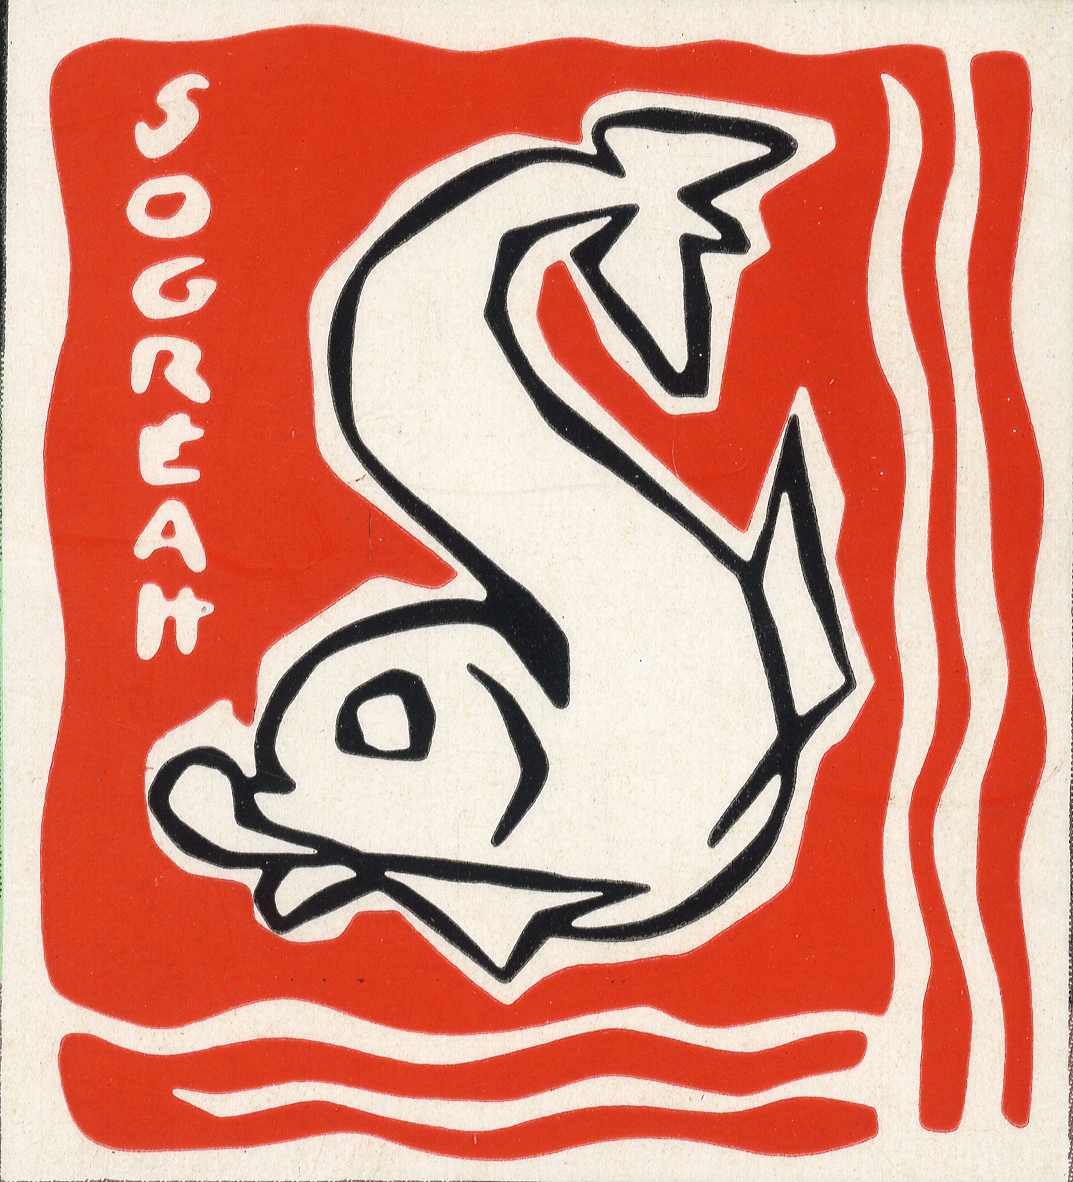 Sogreah dauphin rouge 1963